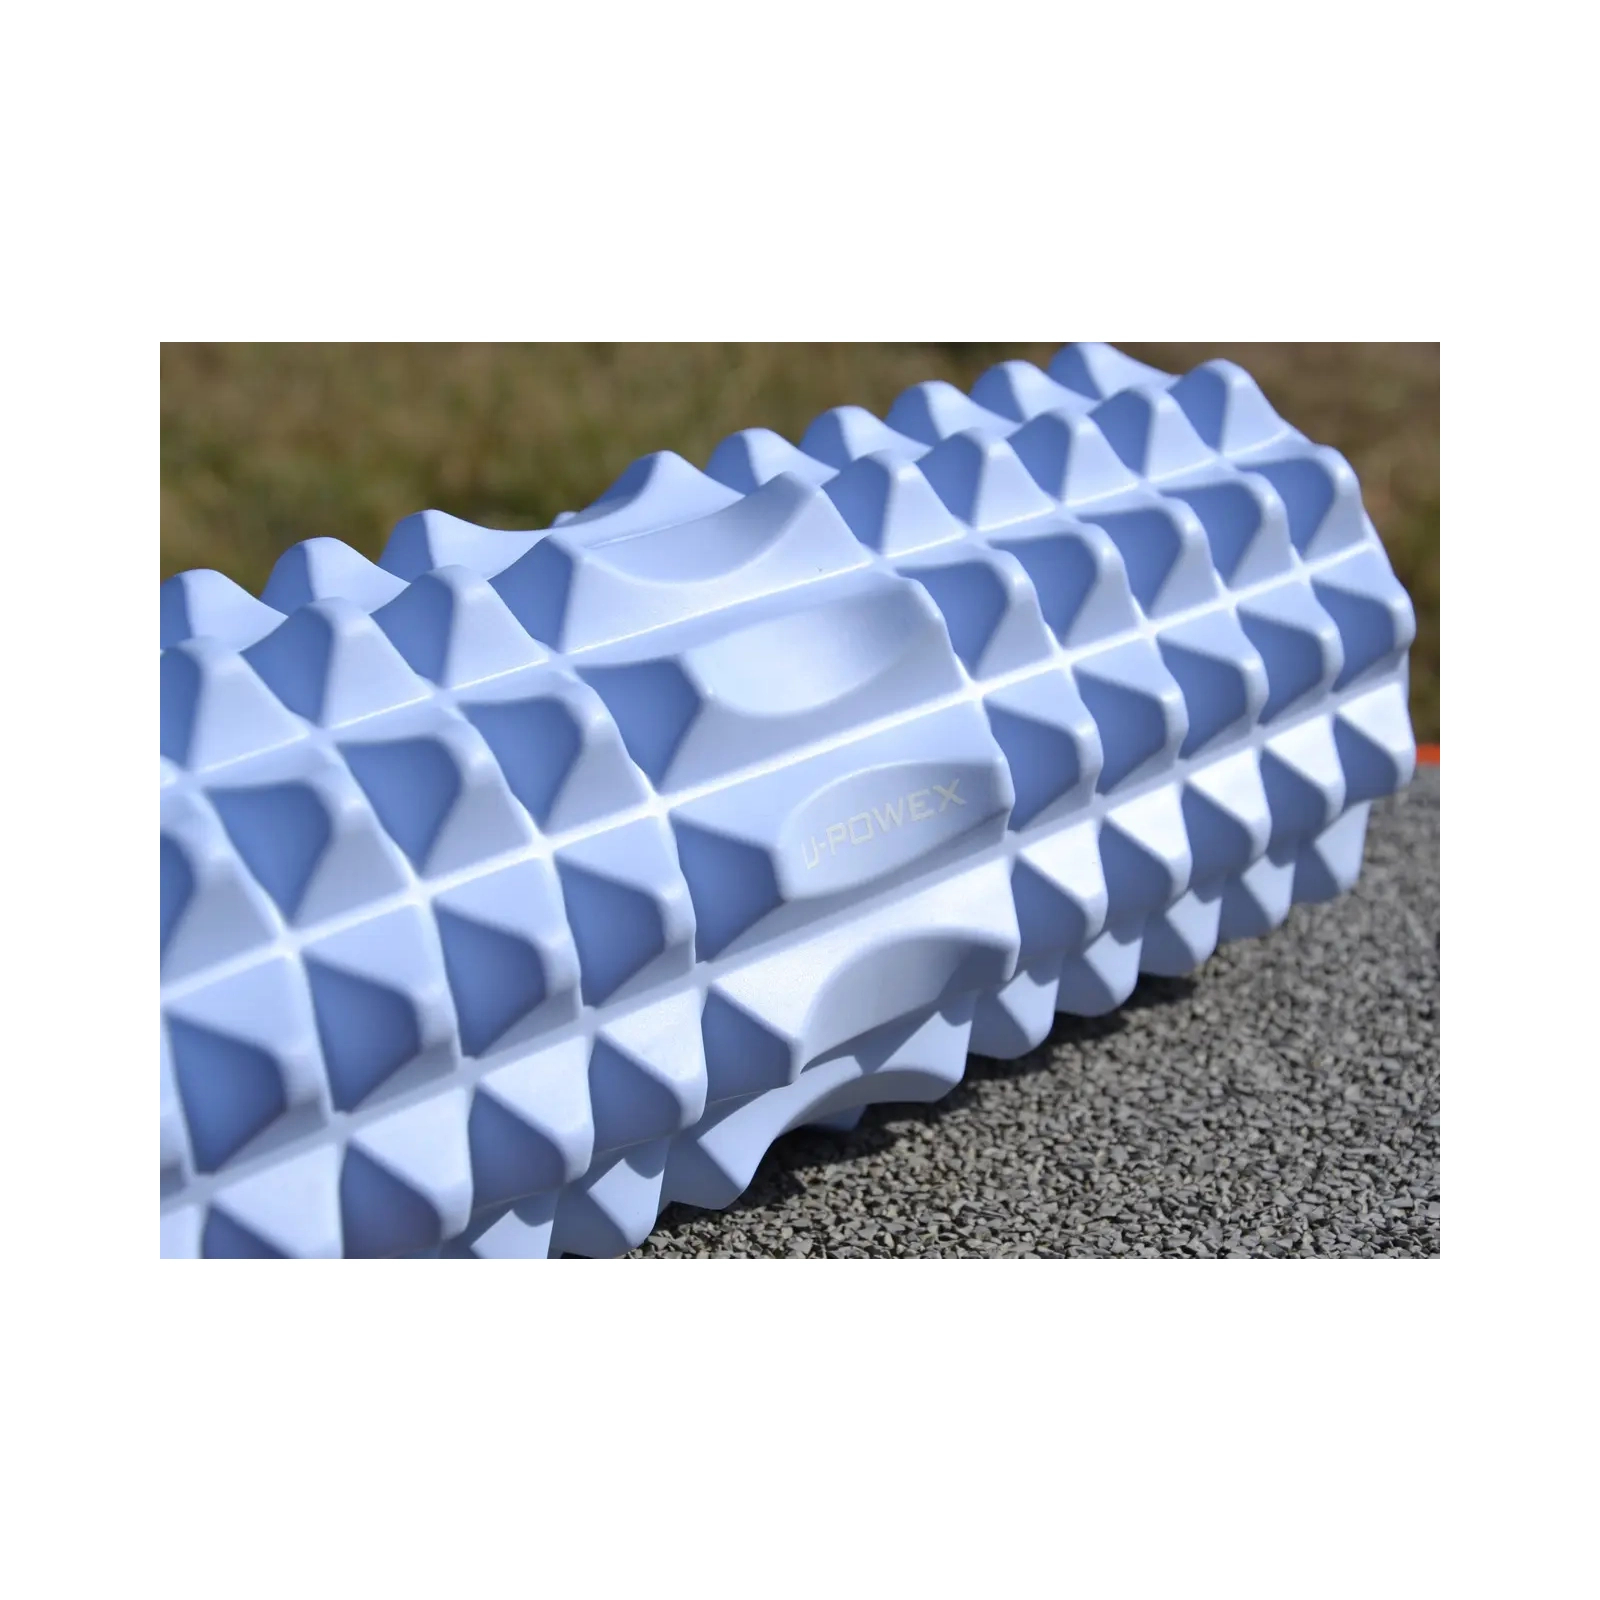 Масажный ролик U-Powex UP_1010 EVA foam roller 33x14см Type 2 Blue (UP_1010_T2_Blue) изображение 9